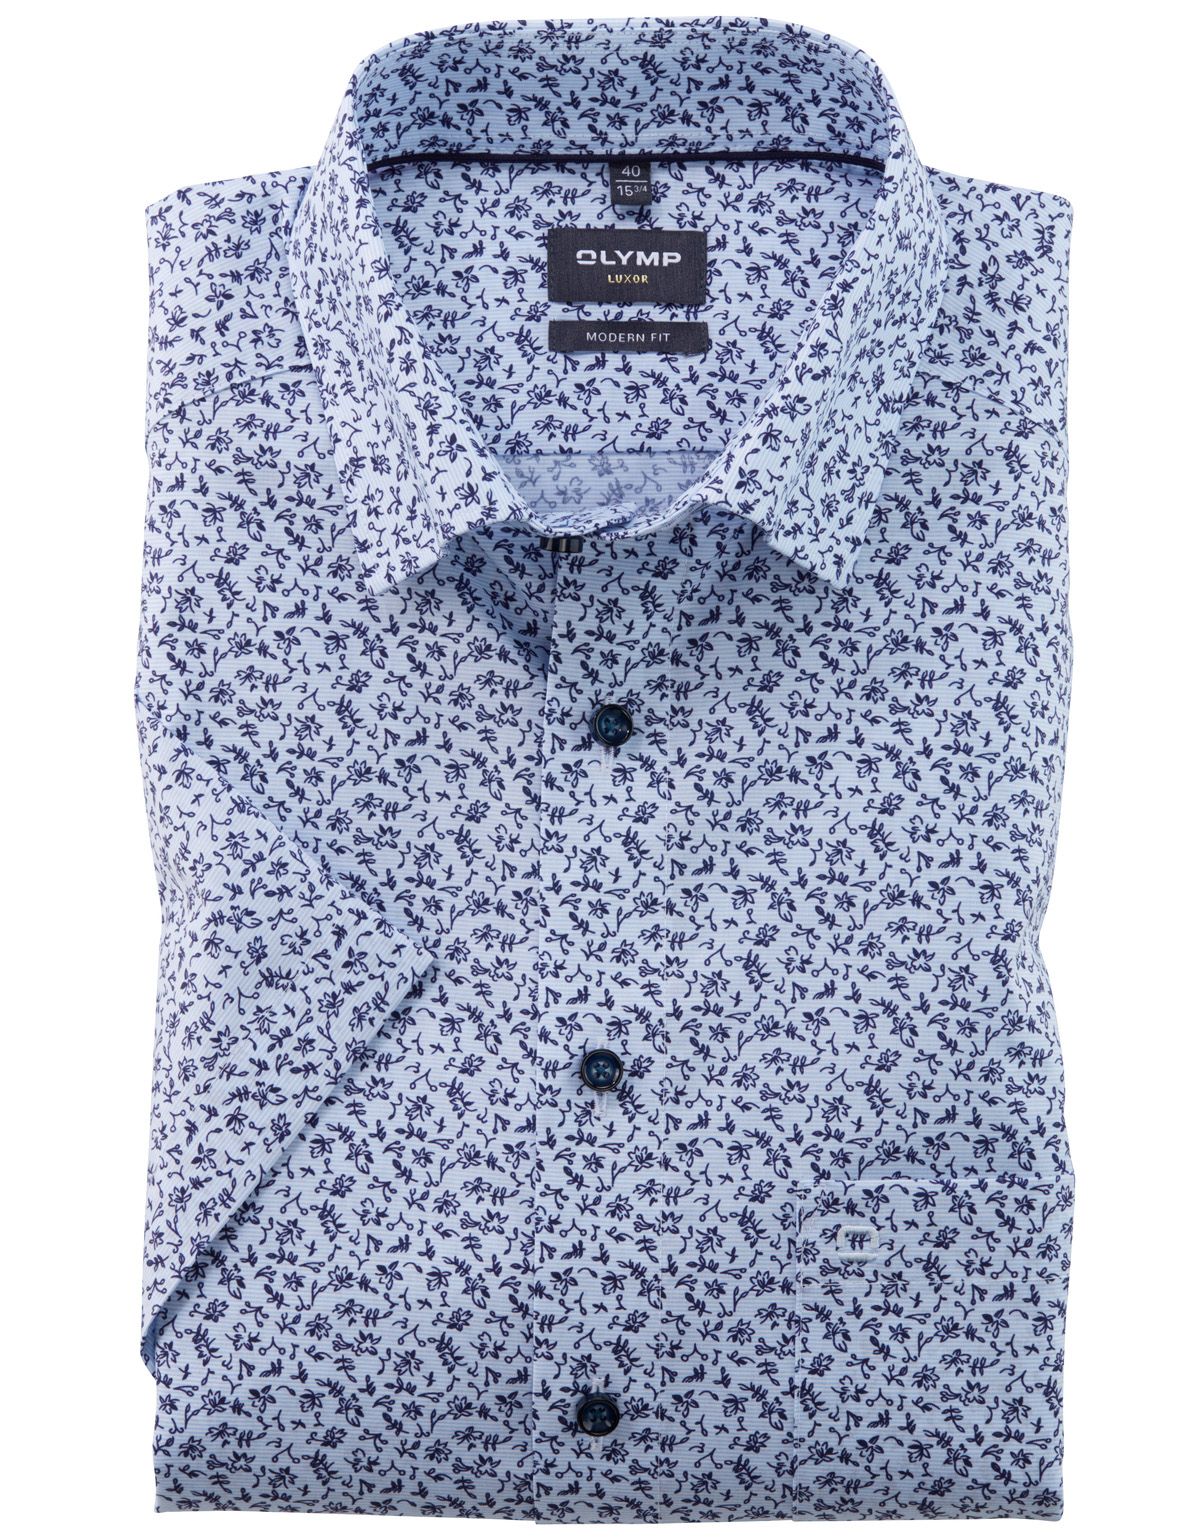 Рубашка мужская с цветочным рисунком OLYMP Luxor, modern fit[Голубой]